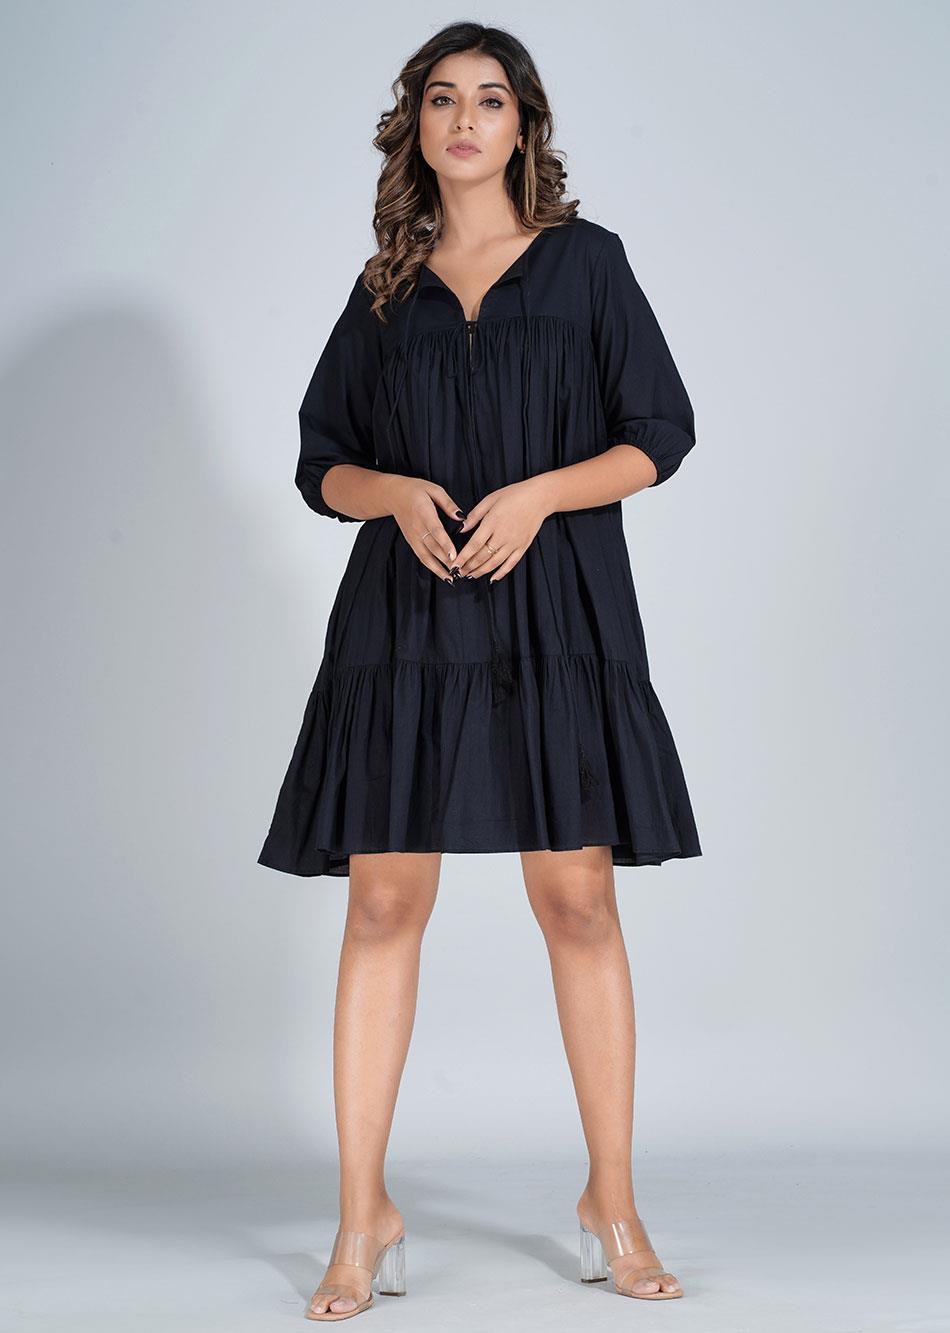 Black Mini Tier Dress By Jovi Fashion